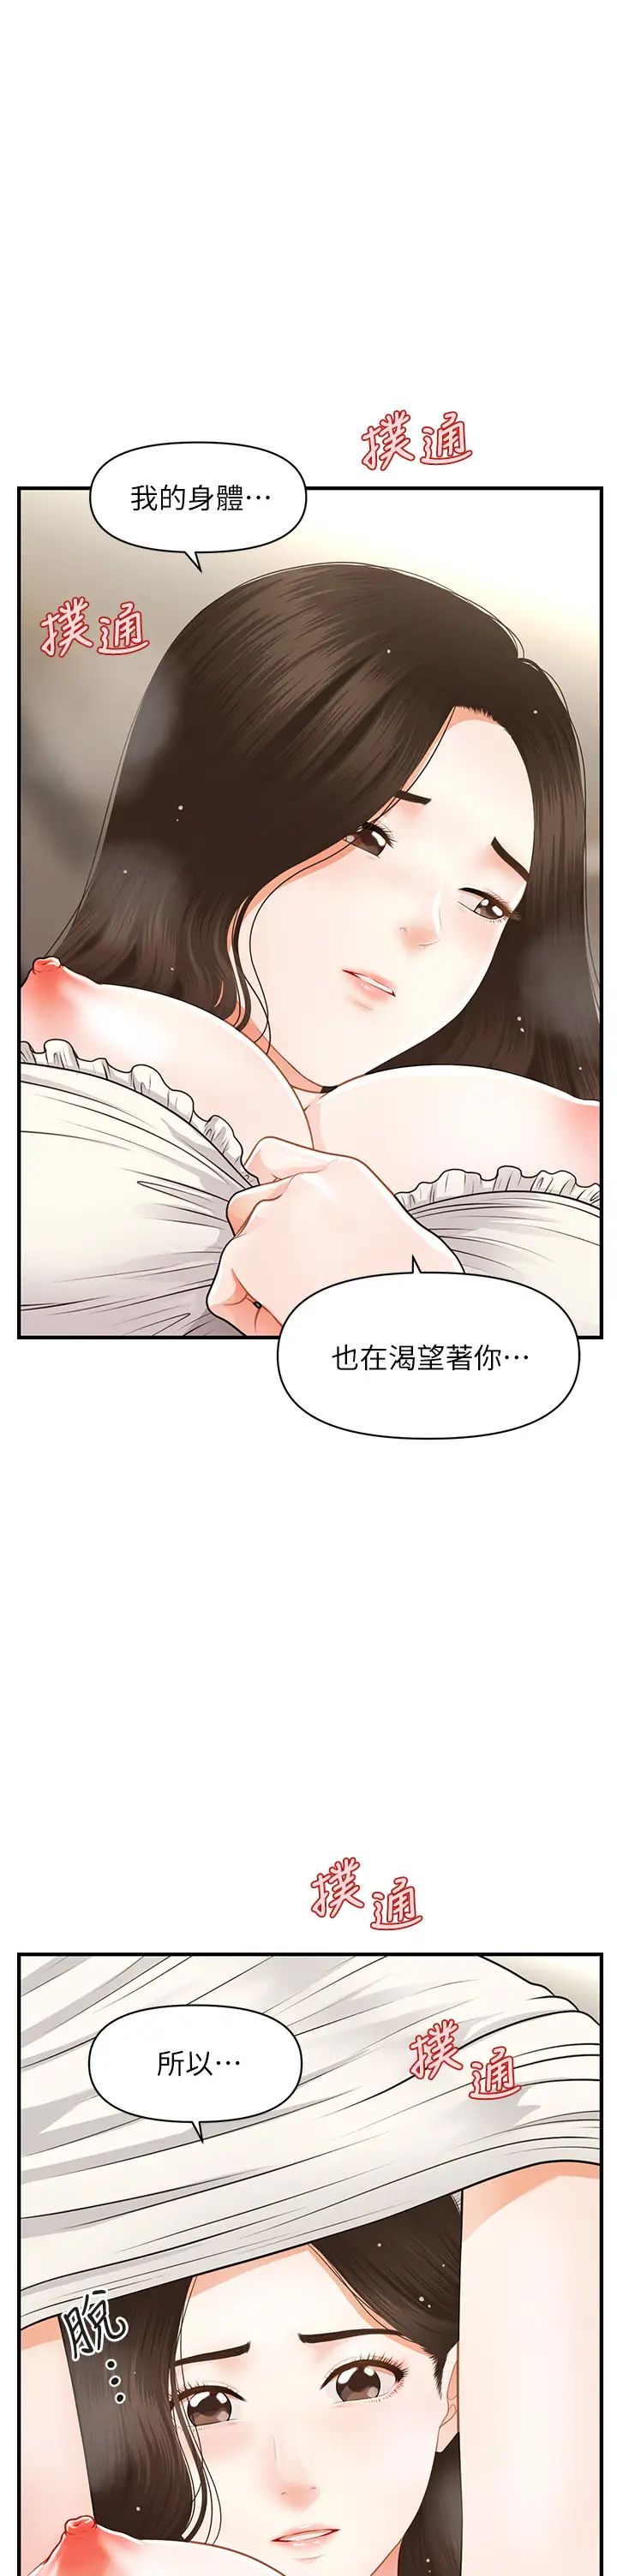 韩国污漫画 醫美奇雞 第57话莉雅的性爱初体验 1